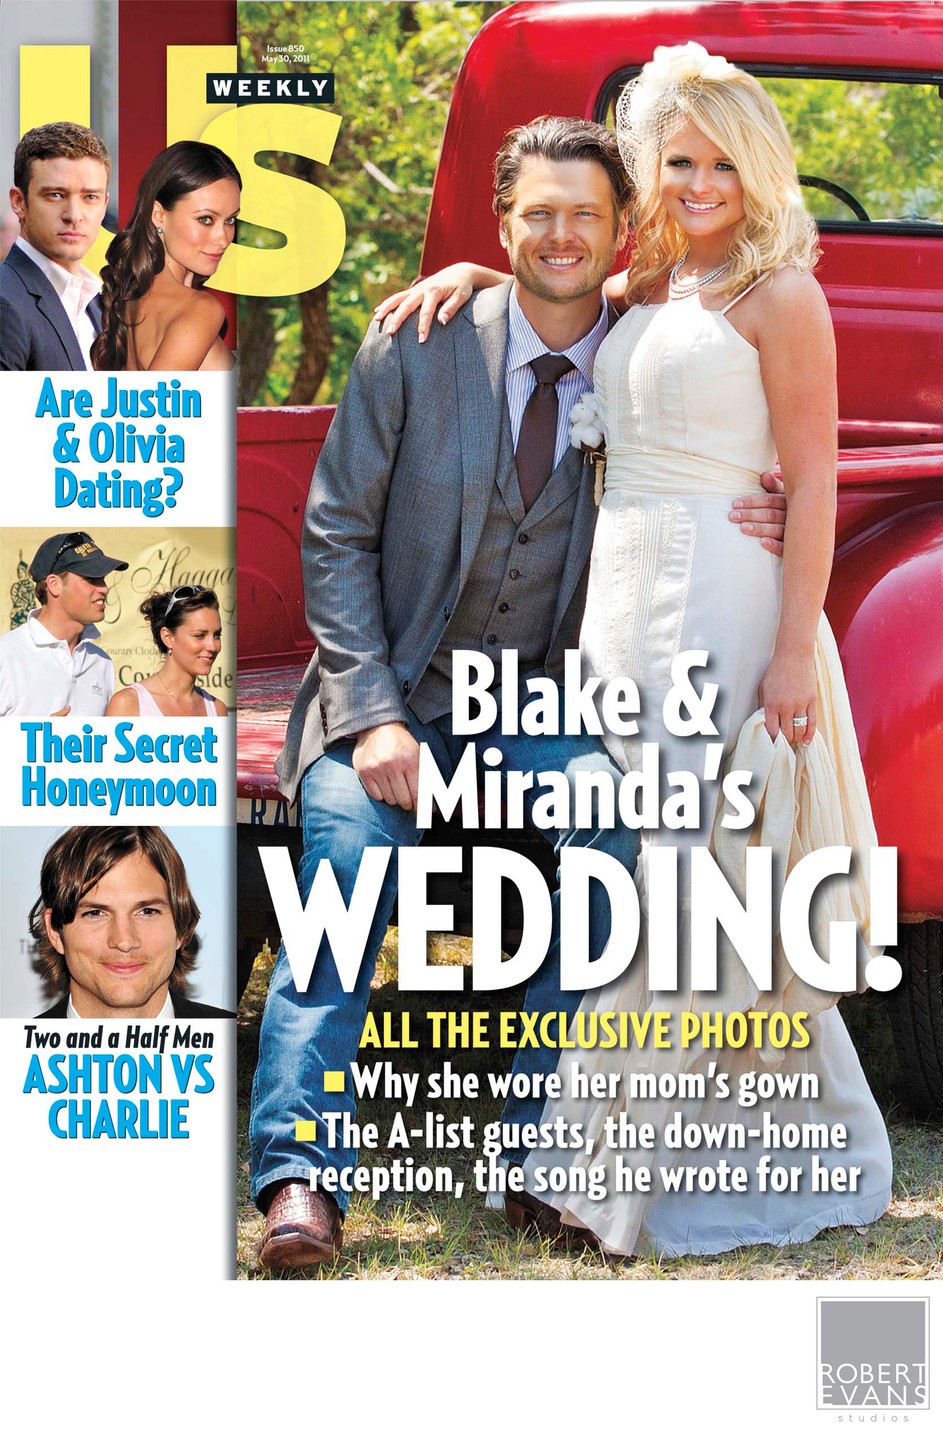 Miranda Lambert and Blake Shelton Wedding Pictures